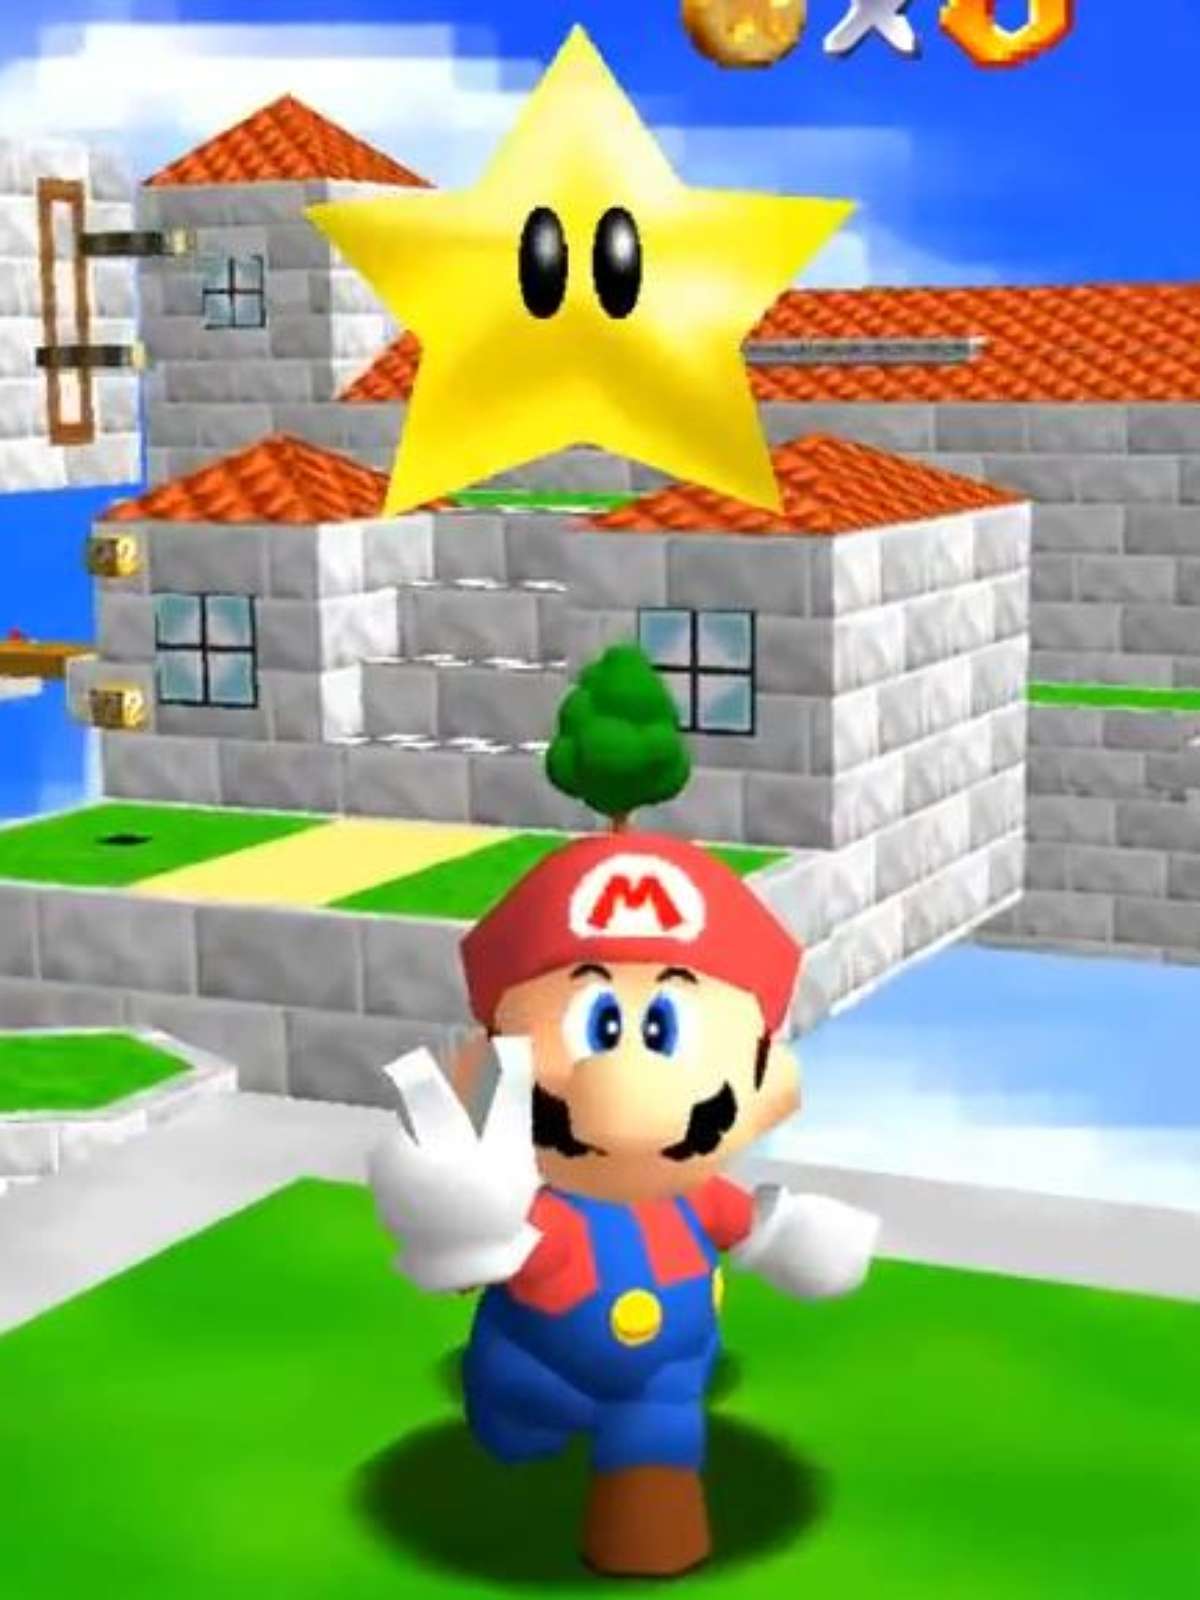 Dez minutos de jogo resumem decepção com novo Super Mario e ações